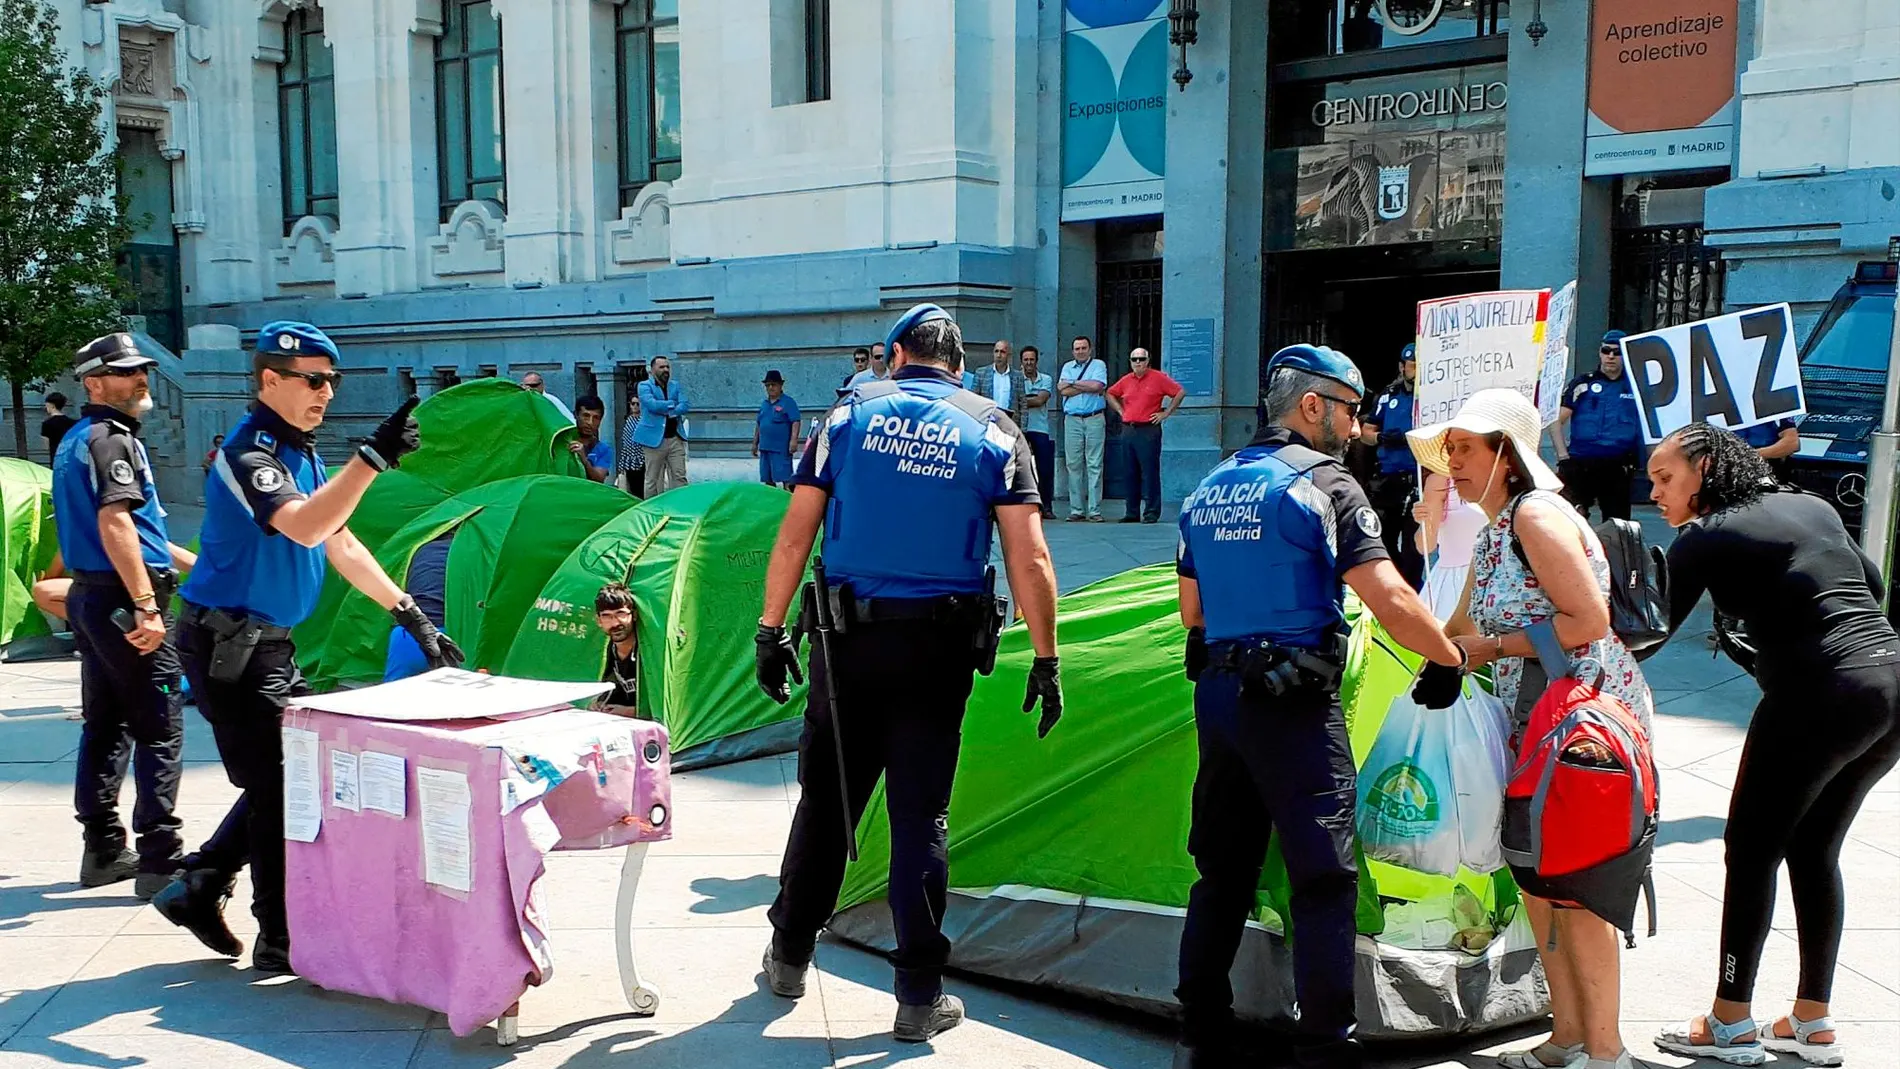 Pasadas las 13:00 horas, agentes de la Policía Municipal retiraron las tiendas de campaña y detuvieron al portavoz por resistirse / Foto: Nuria Platón